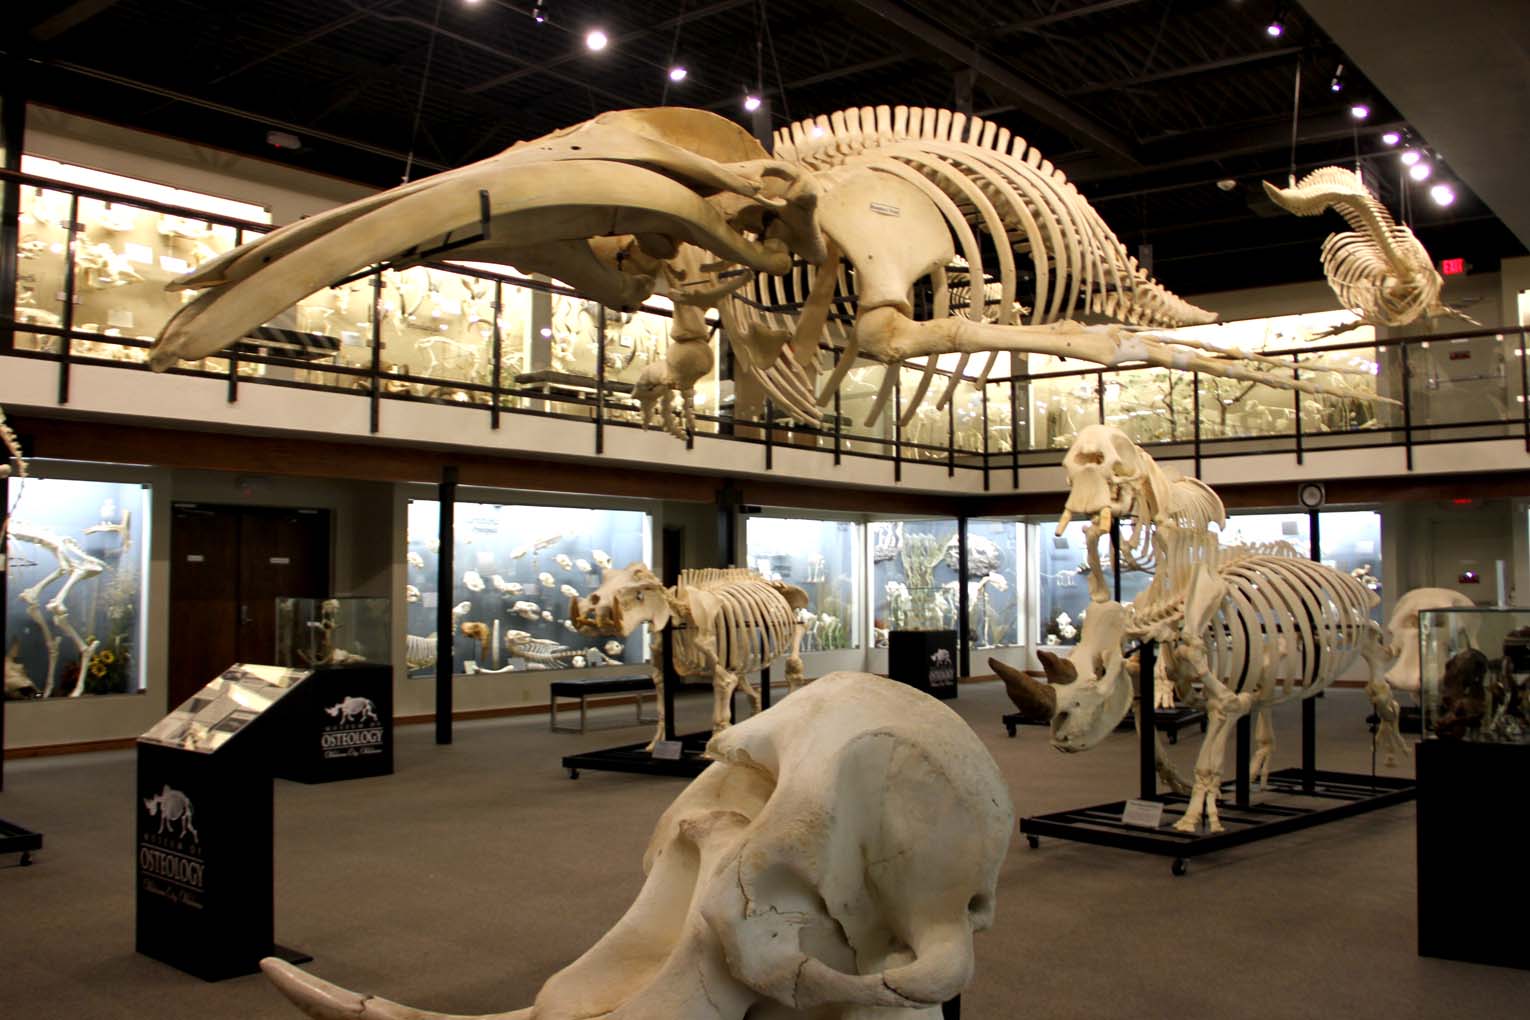 Museum full of animal skeletons